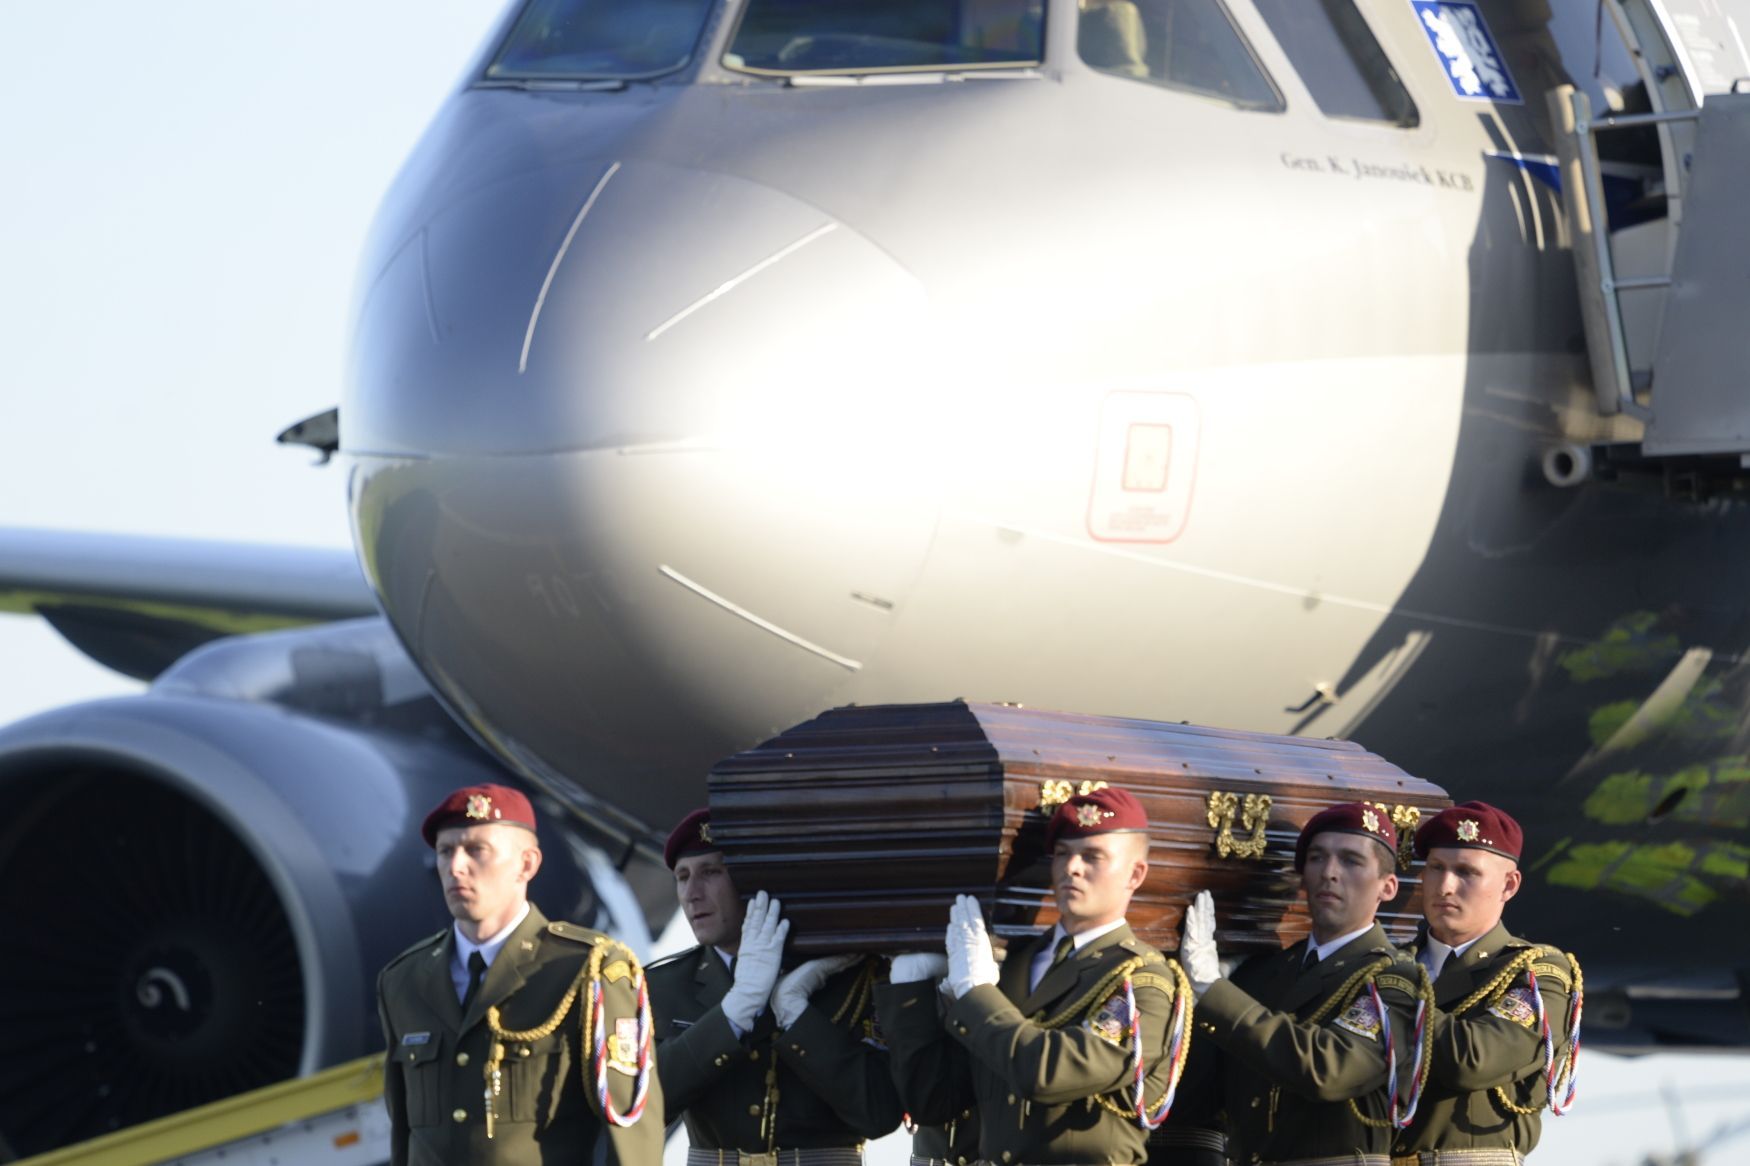 Vojáci nesou rakev s ostatky kardinála Berana po přistání v Praze.